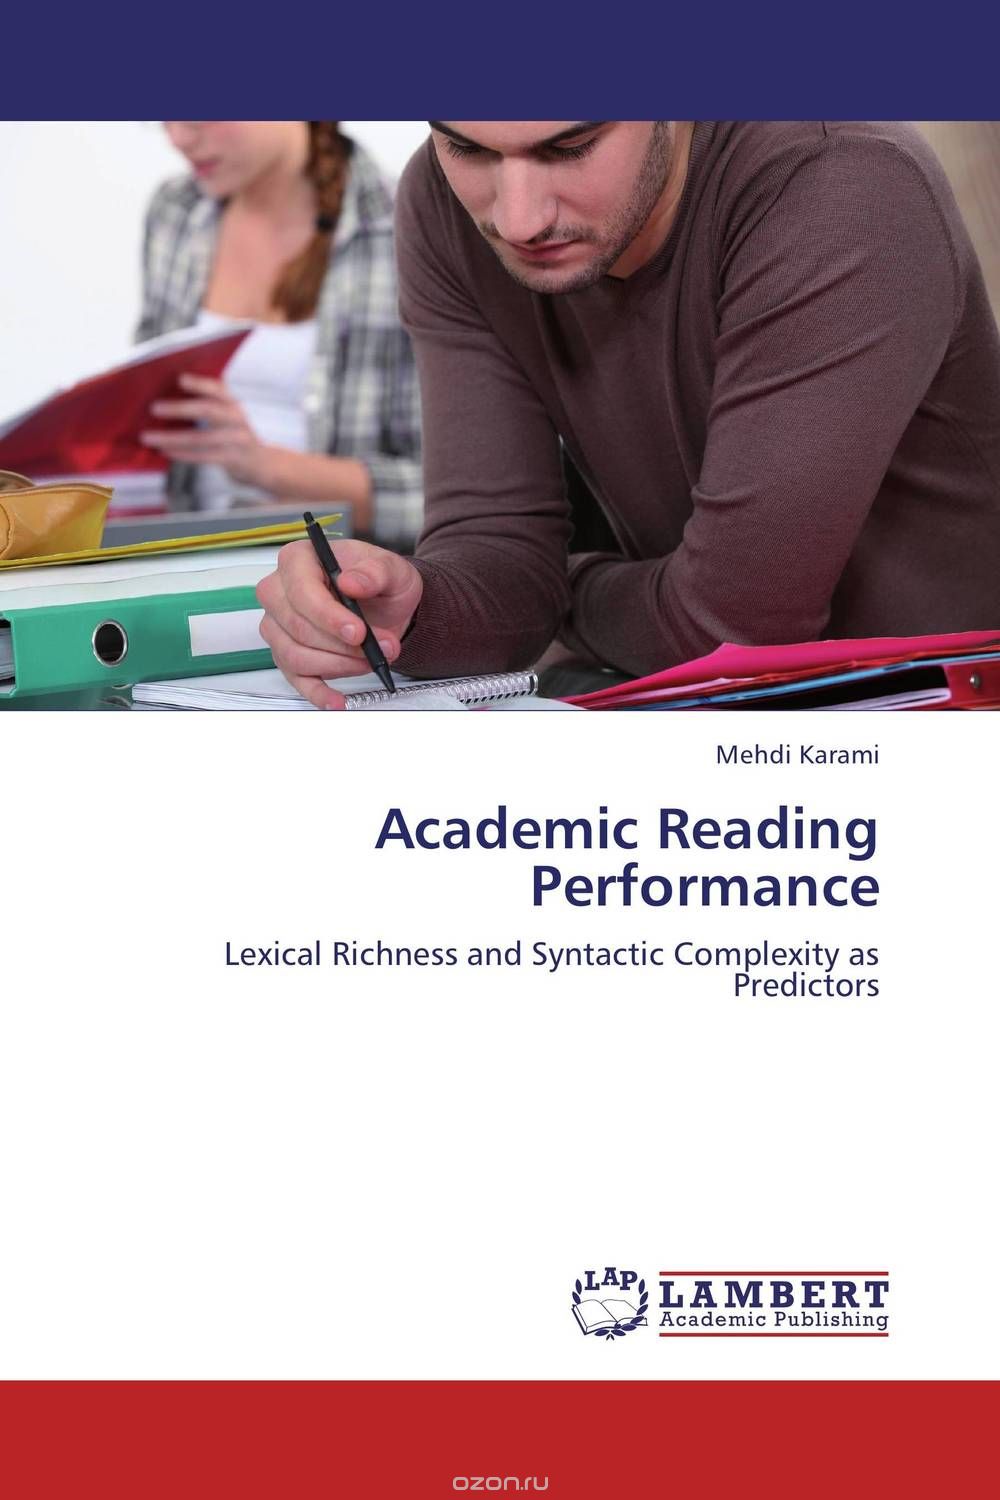 Скачать книгу "Academic Reading Performance"